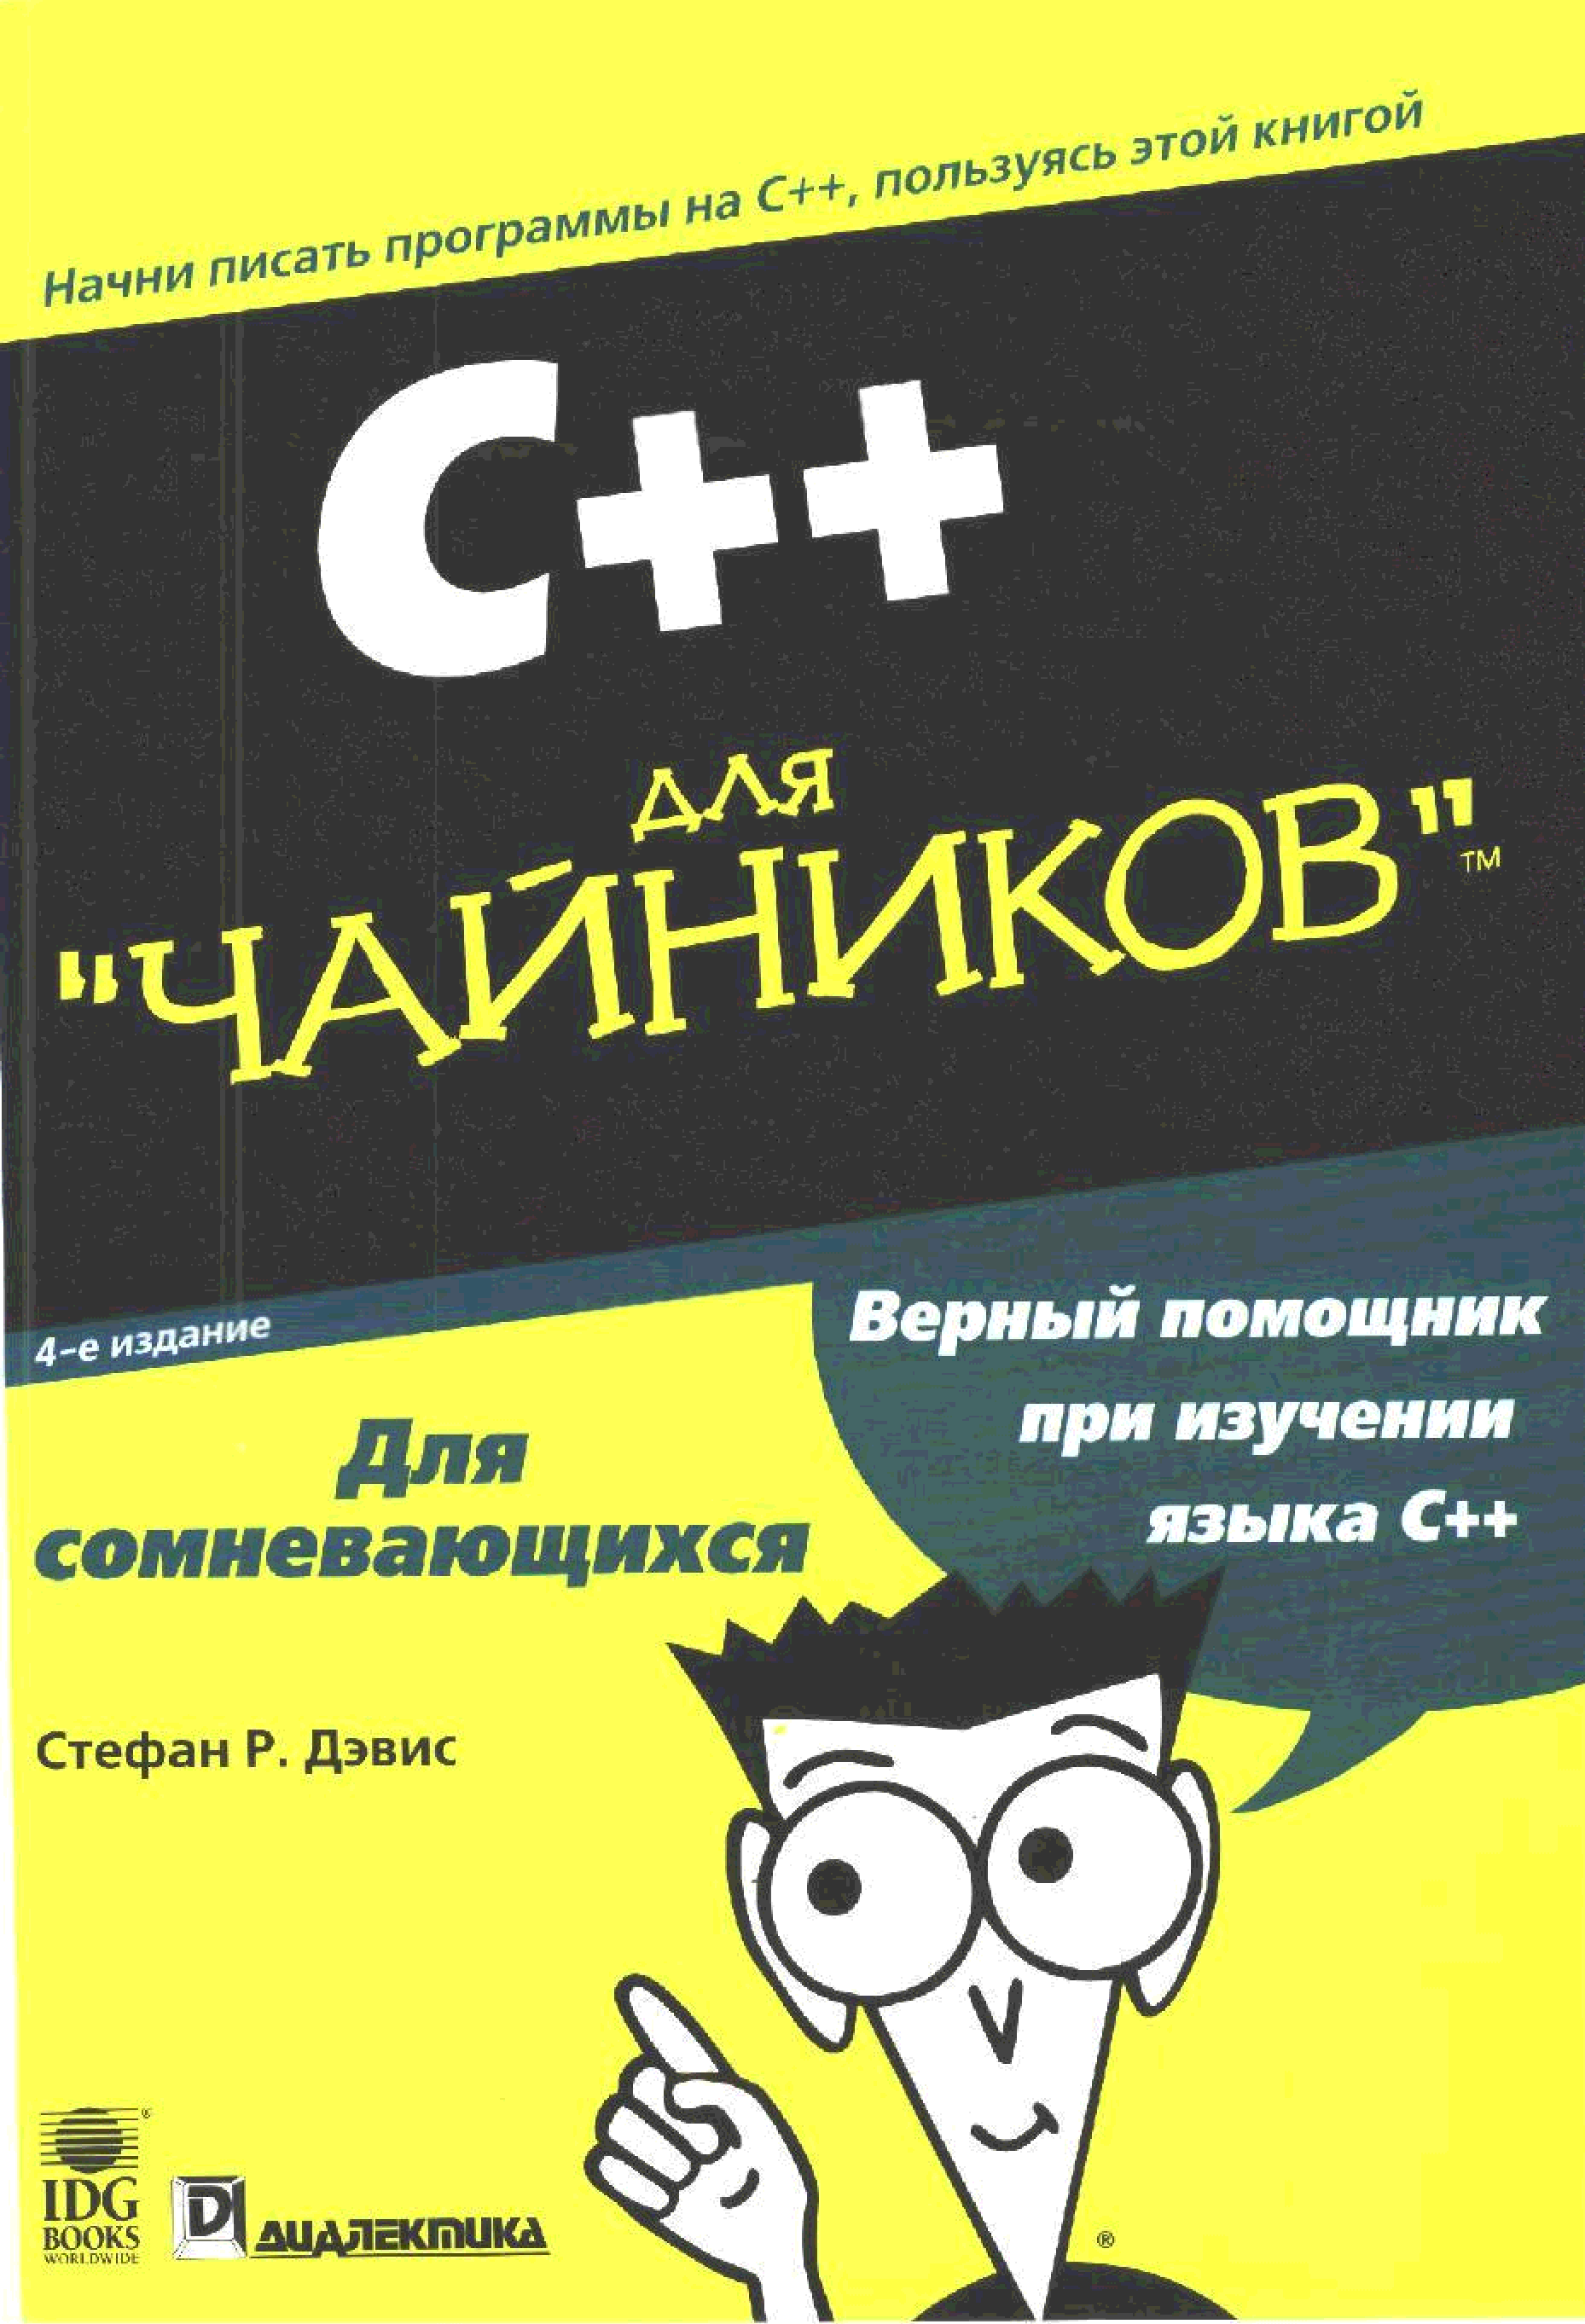 Книги про программирование. С++ для чайников книга. Си Шарп для чайников книга. C++ для чайников самоучитель.